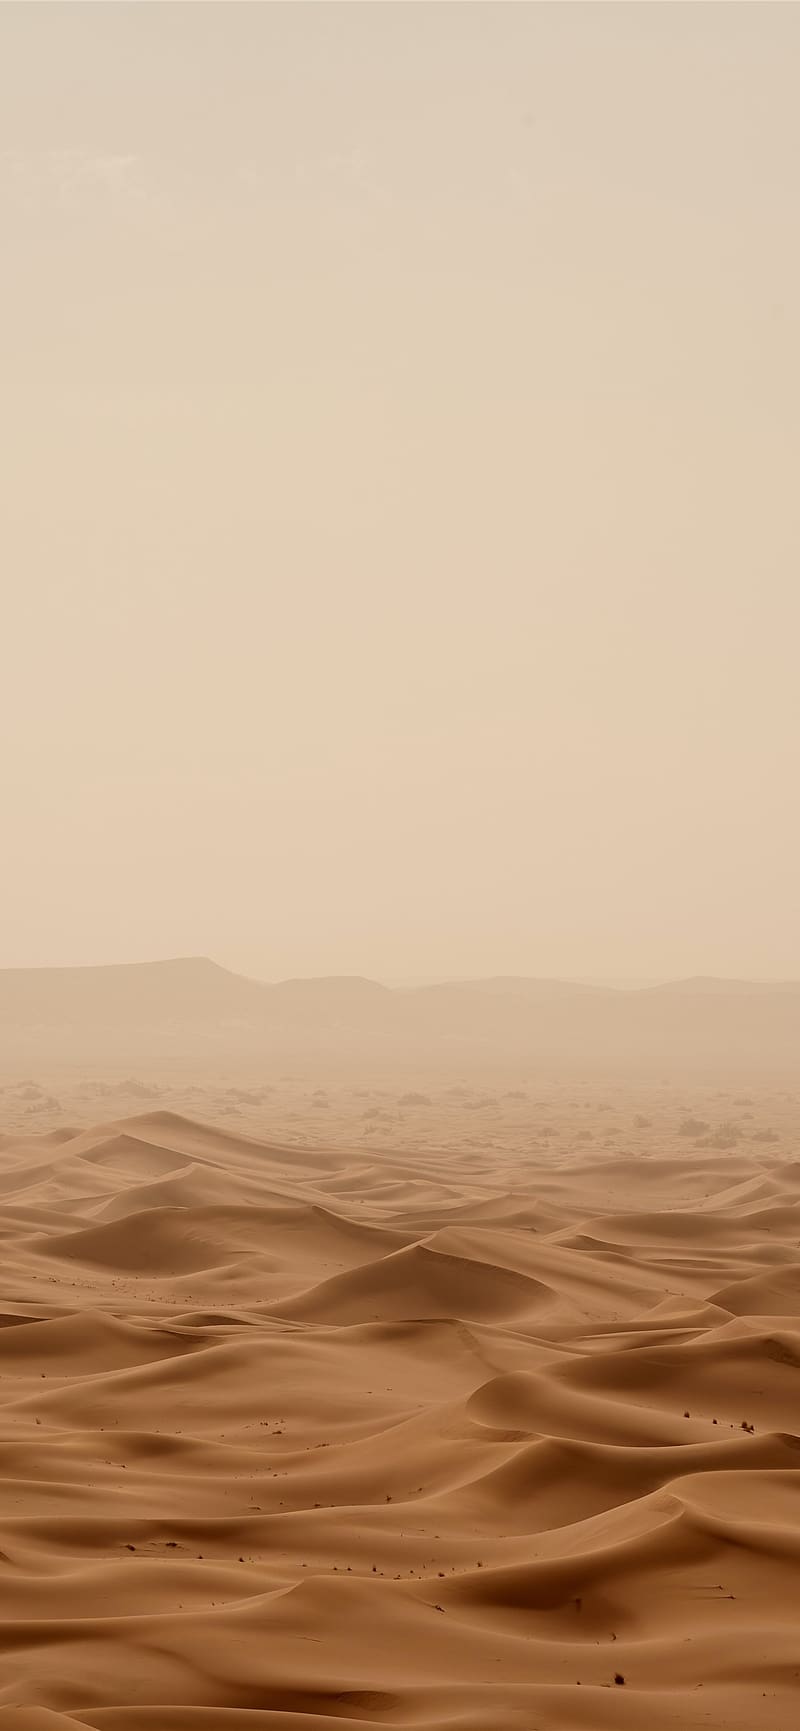 desert under white sky during daytime iPhone, Star Wars Desert, HD phone wallpaper